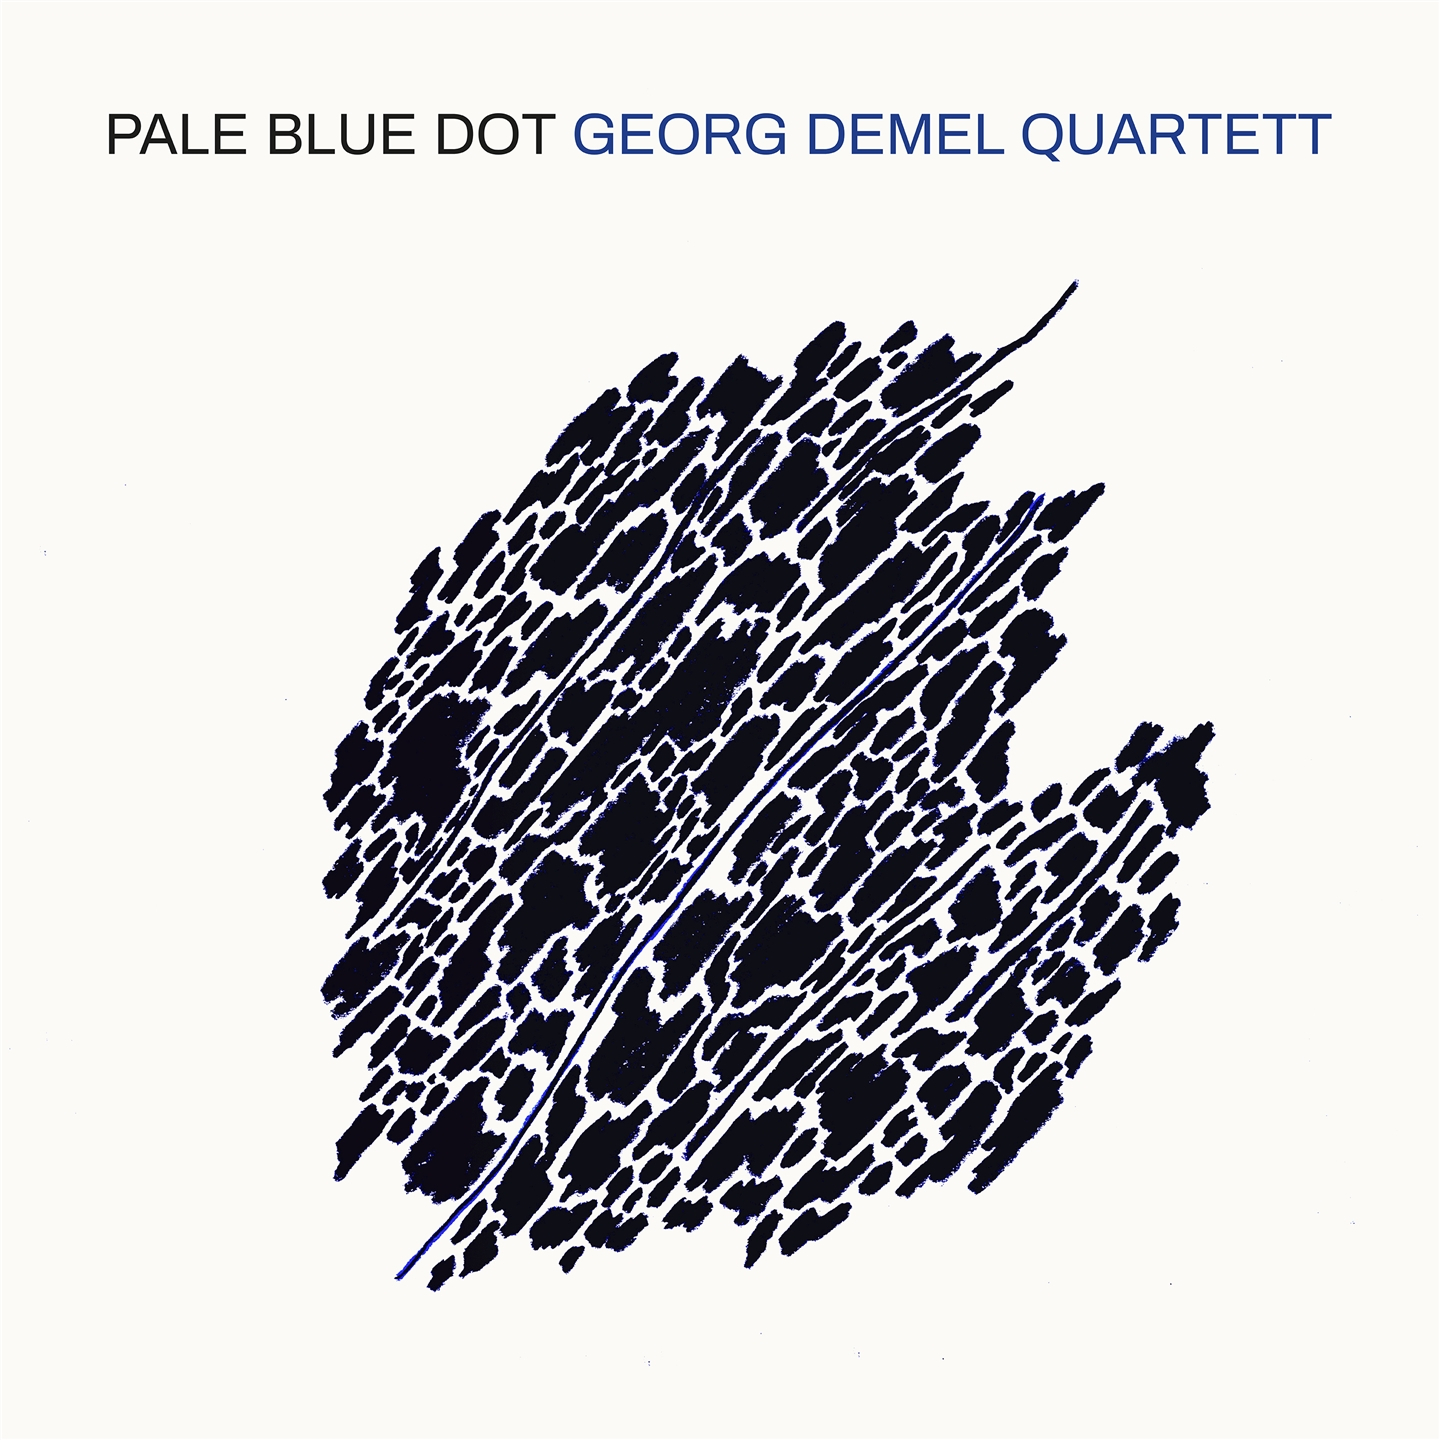 Georg Demel - Pale Blue Dot - Bild 1 von 1